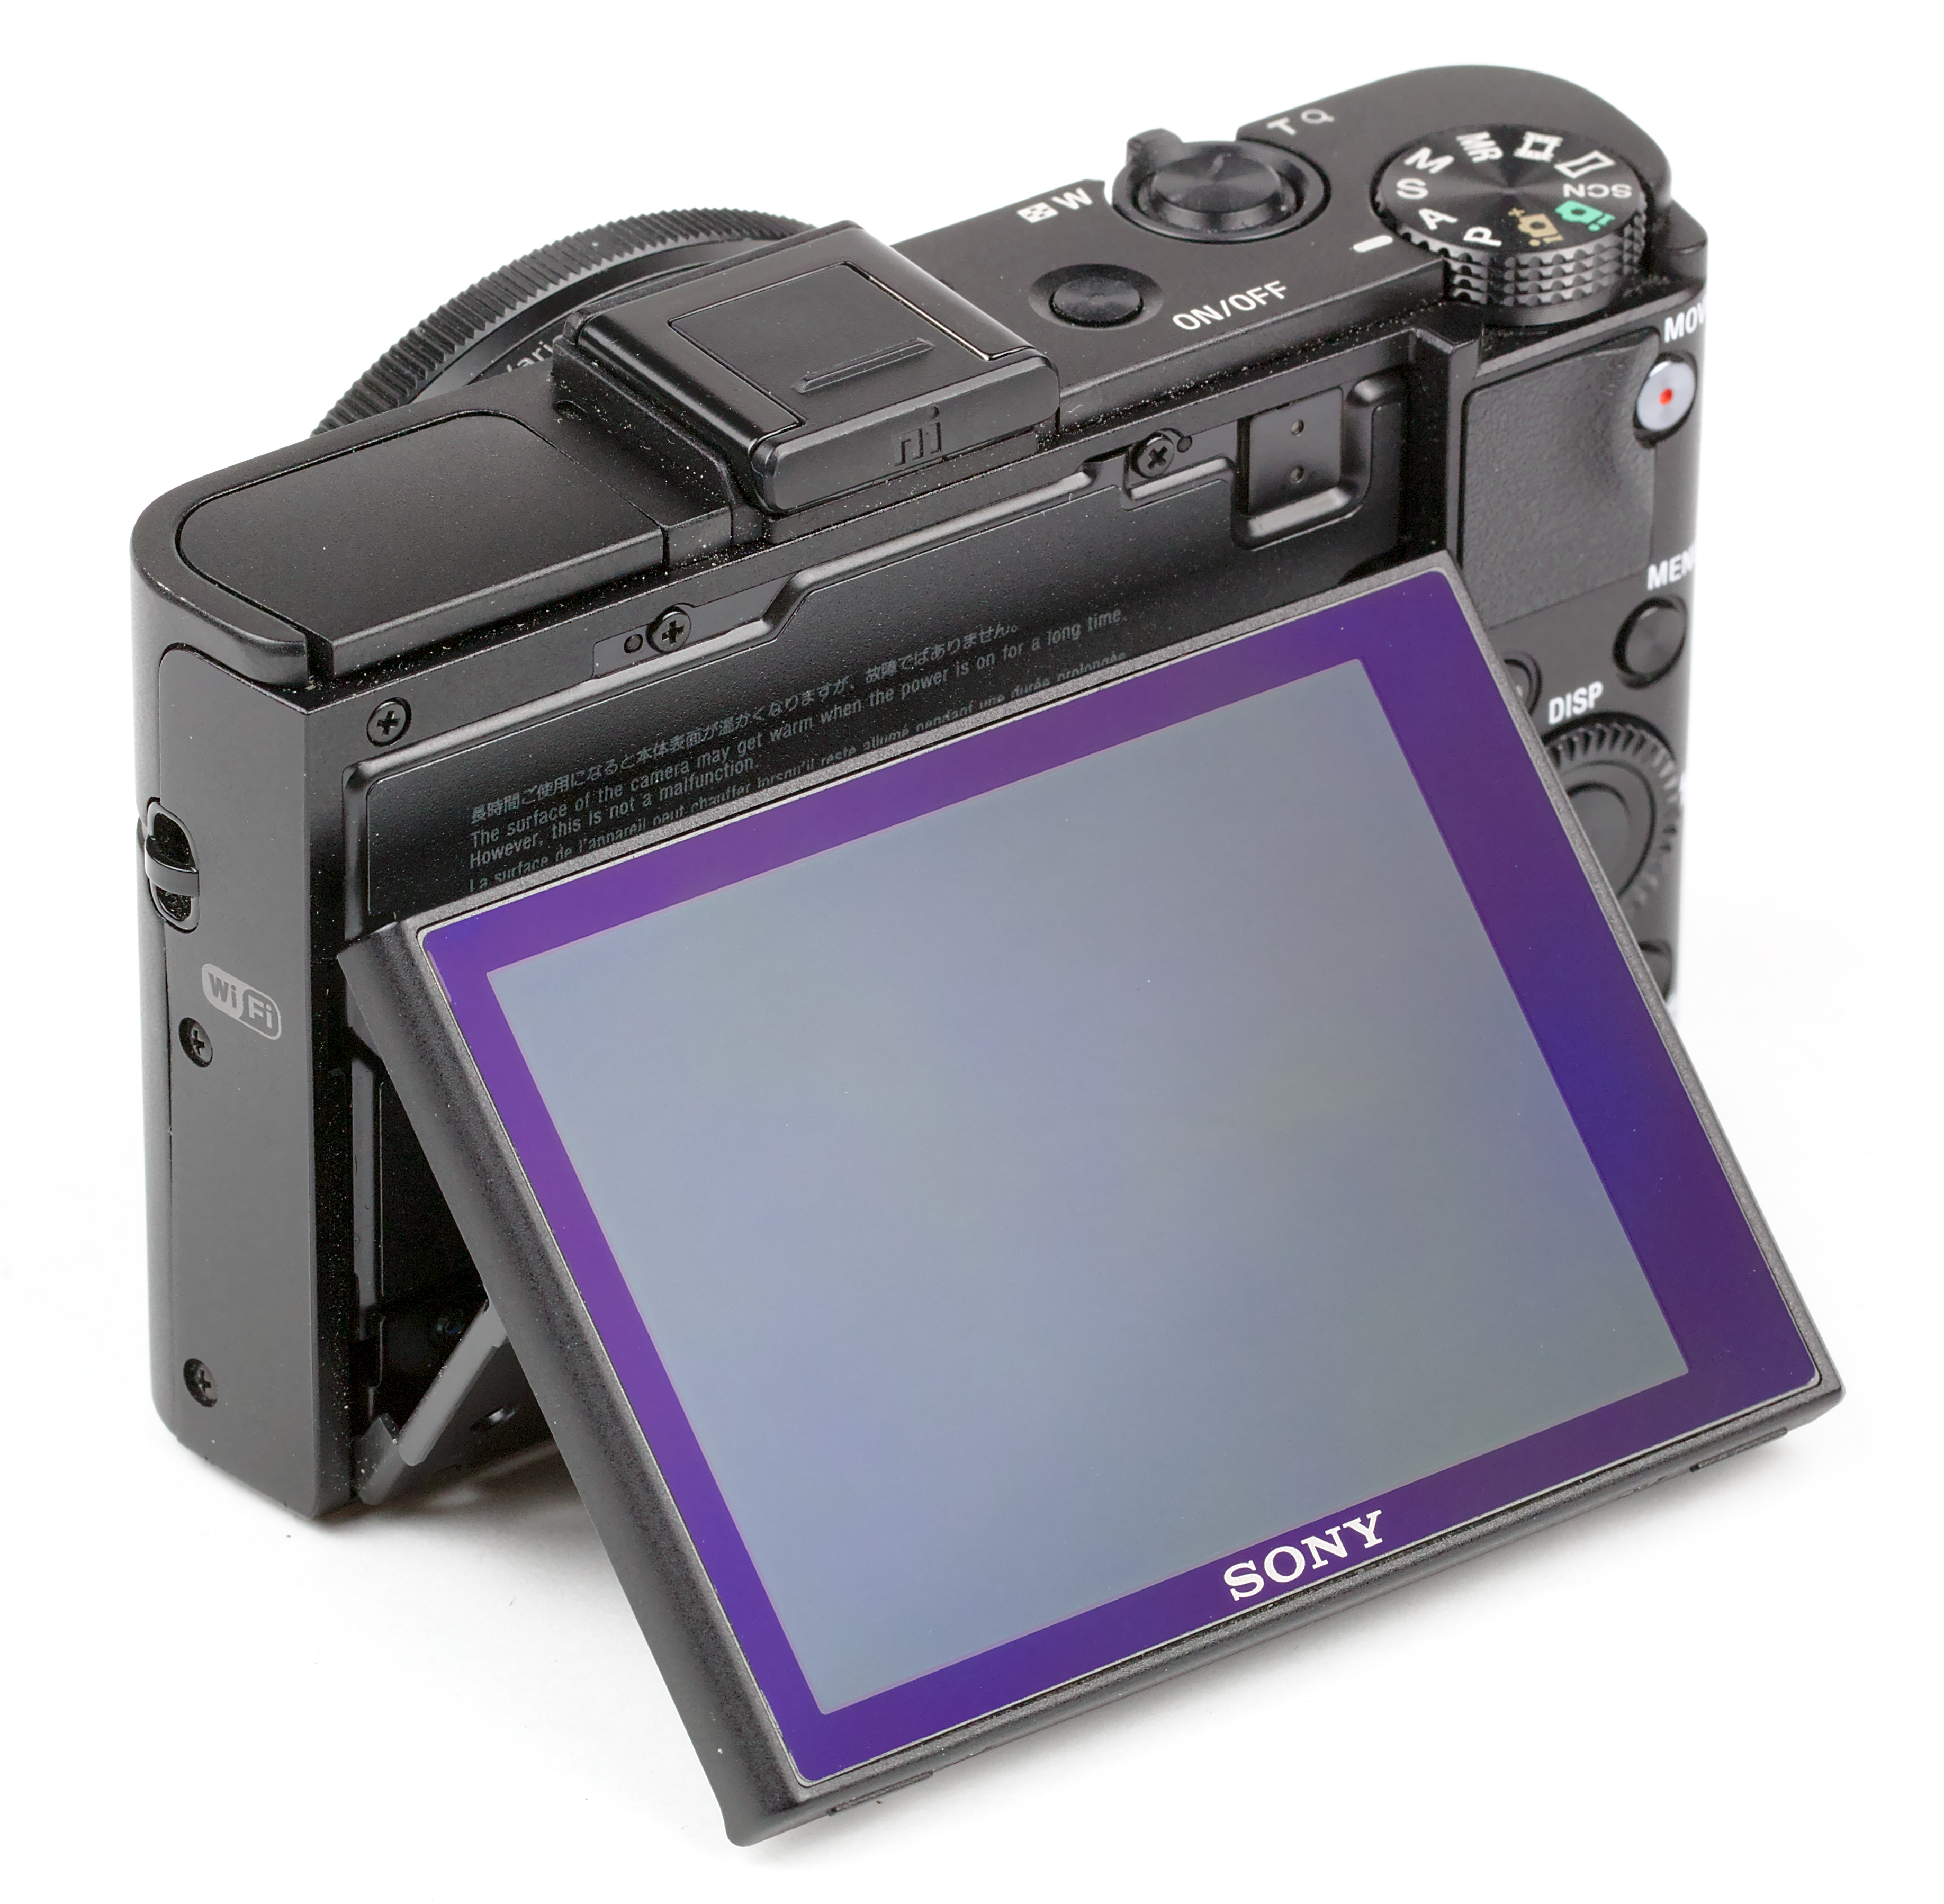 File:Sony Cybershot DSC-RX100 II Back.jpg - Wikimedia Commons